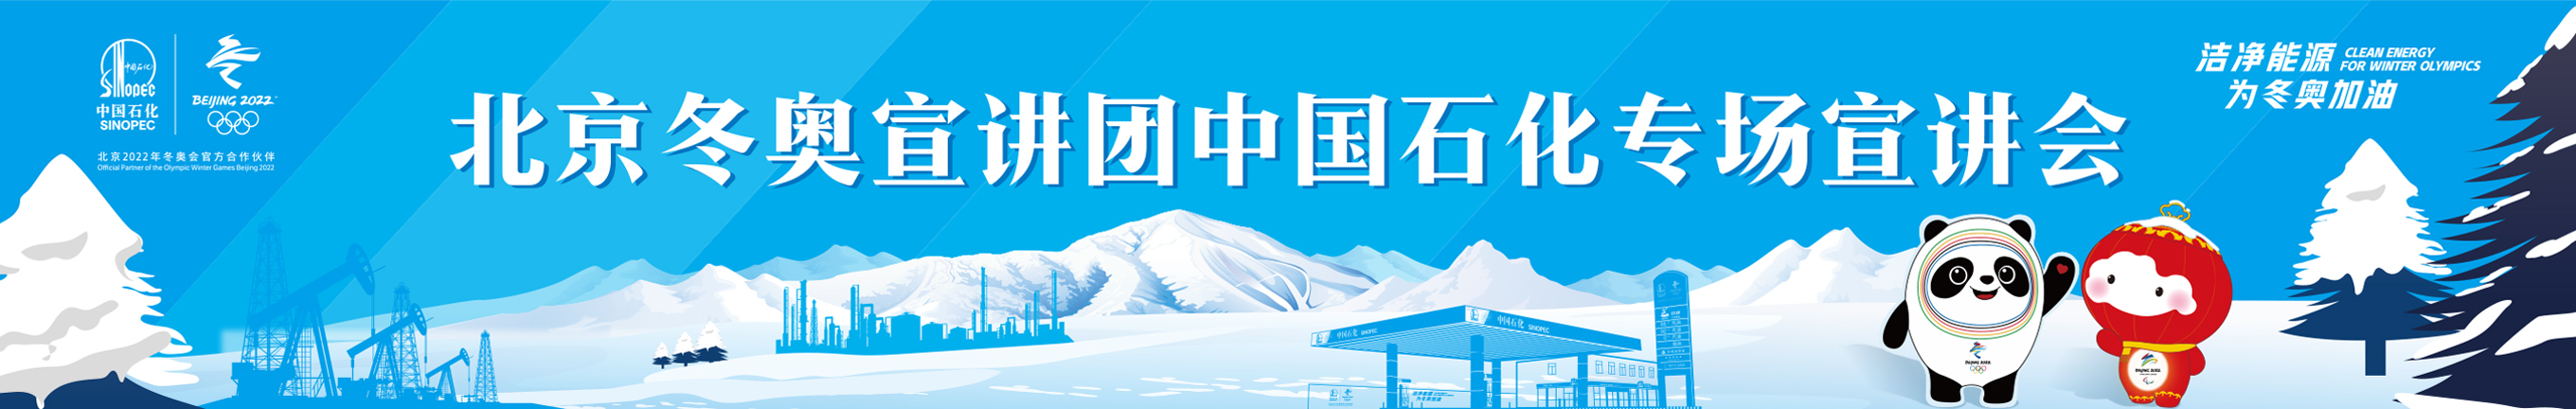 北京冬奥会倒计时500天 宣讲团走进中国石化